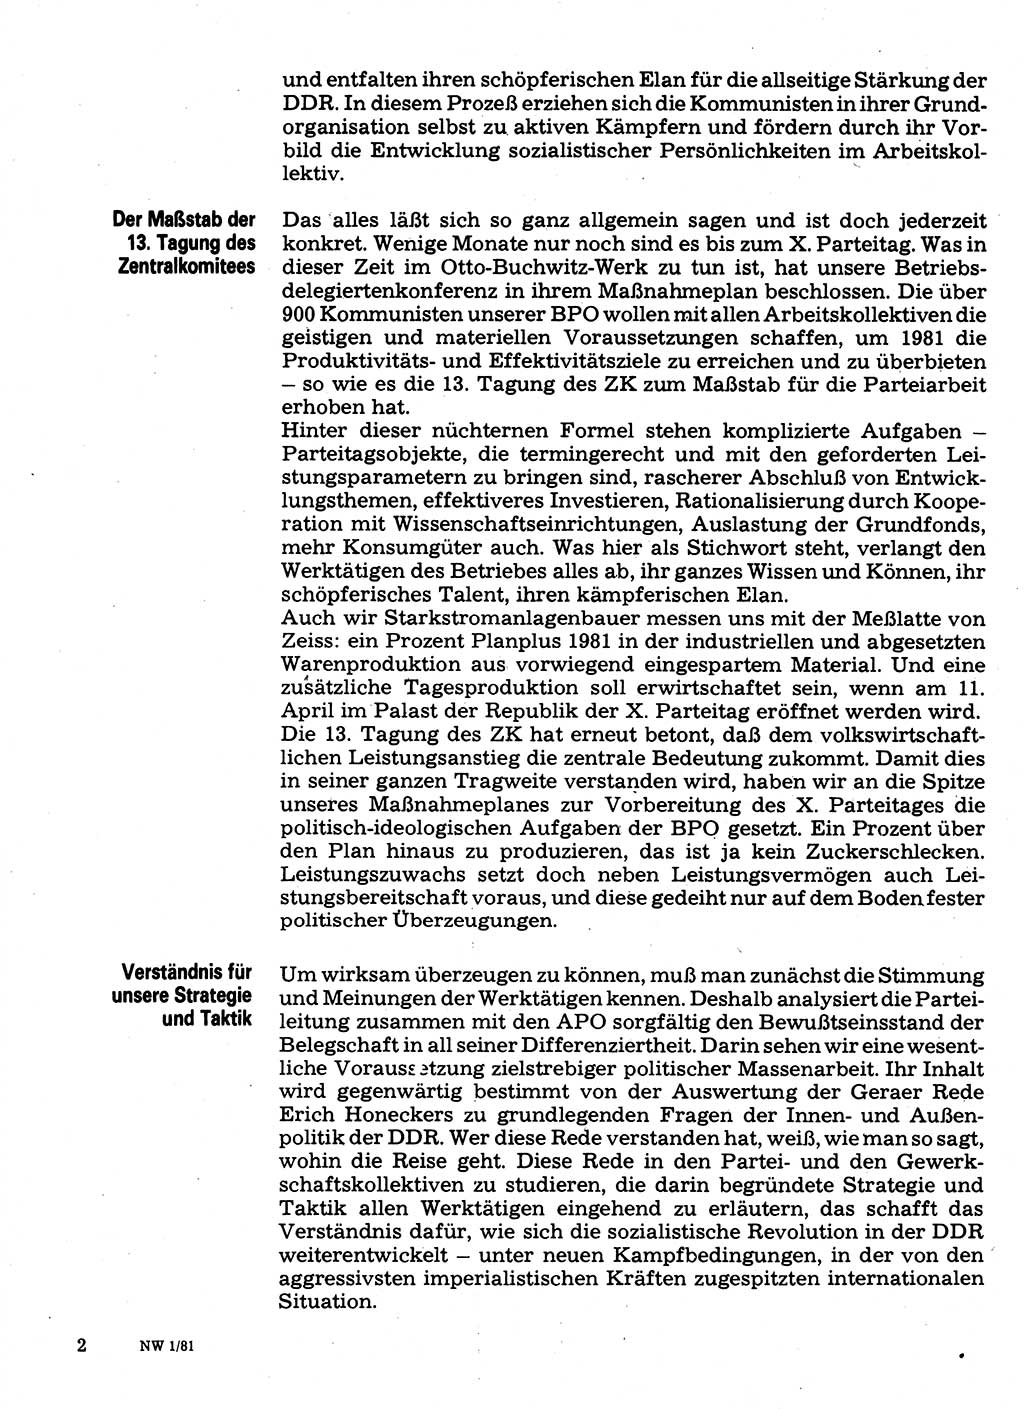 Neuer Weg (NW), Organ des Zentralkomitees (ZK) der SED (Sozialistische Einheitspartei Deutschlands) für Fragen des Parteilebens, 36. Jahrgang [Deutsche Demokratische Republik (DDR)] 1981, Seite 2 (NW ZK SED DDR 1981, S. 2)